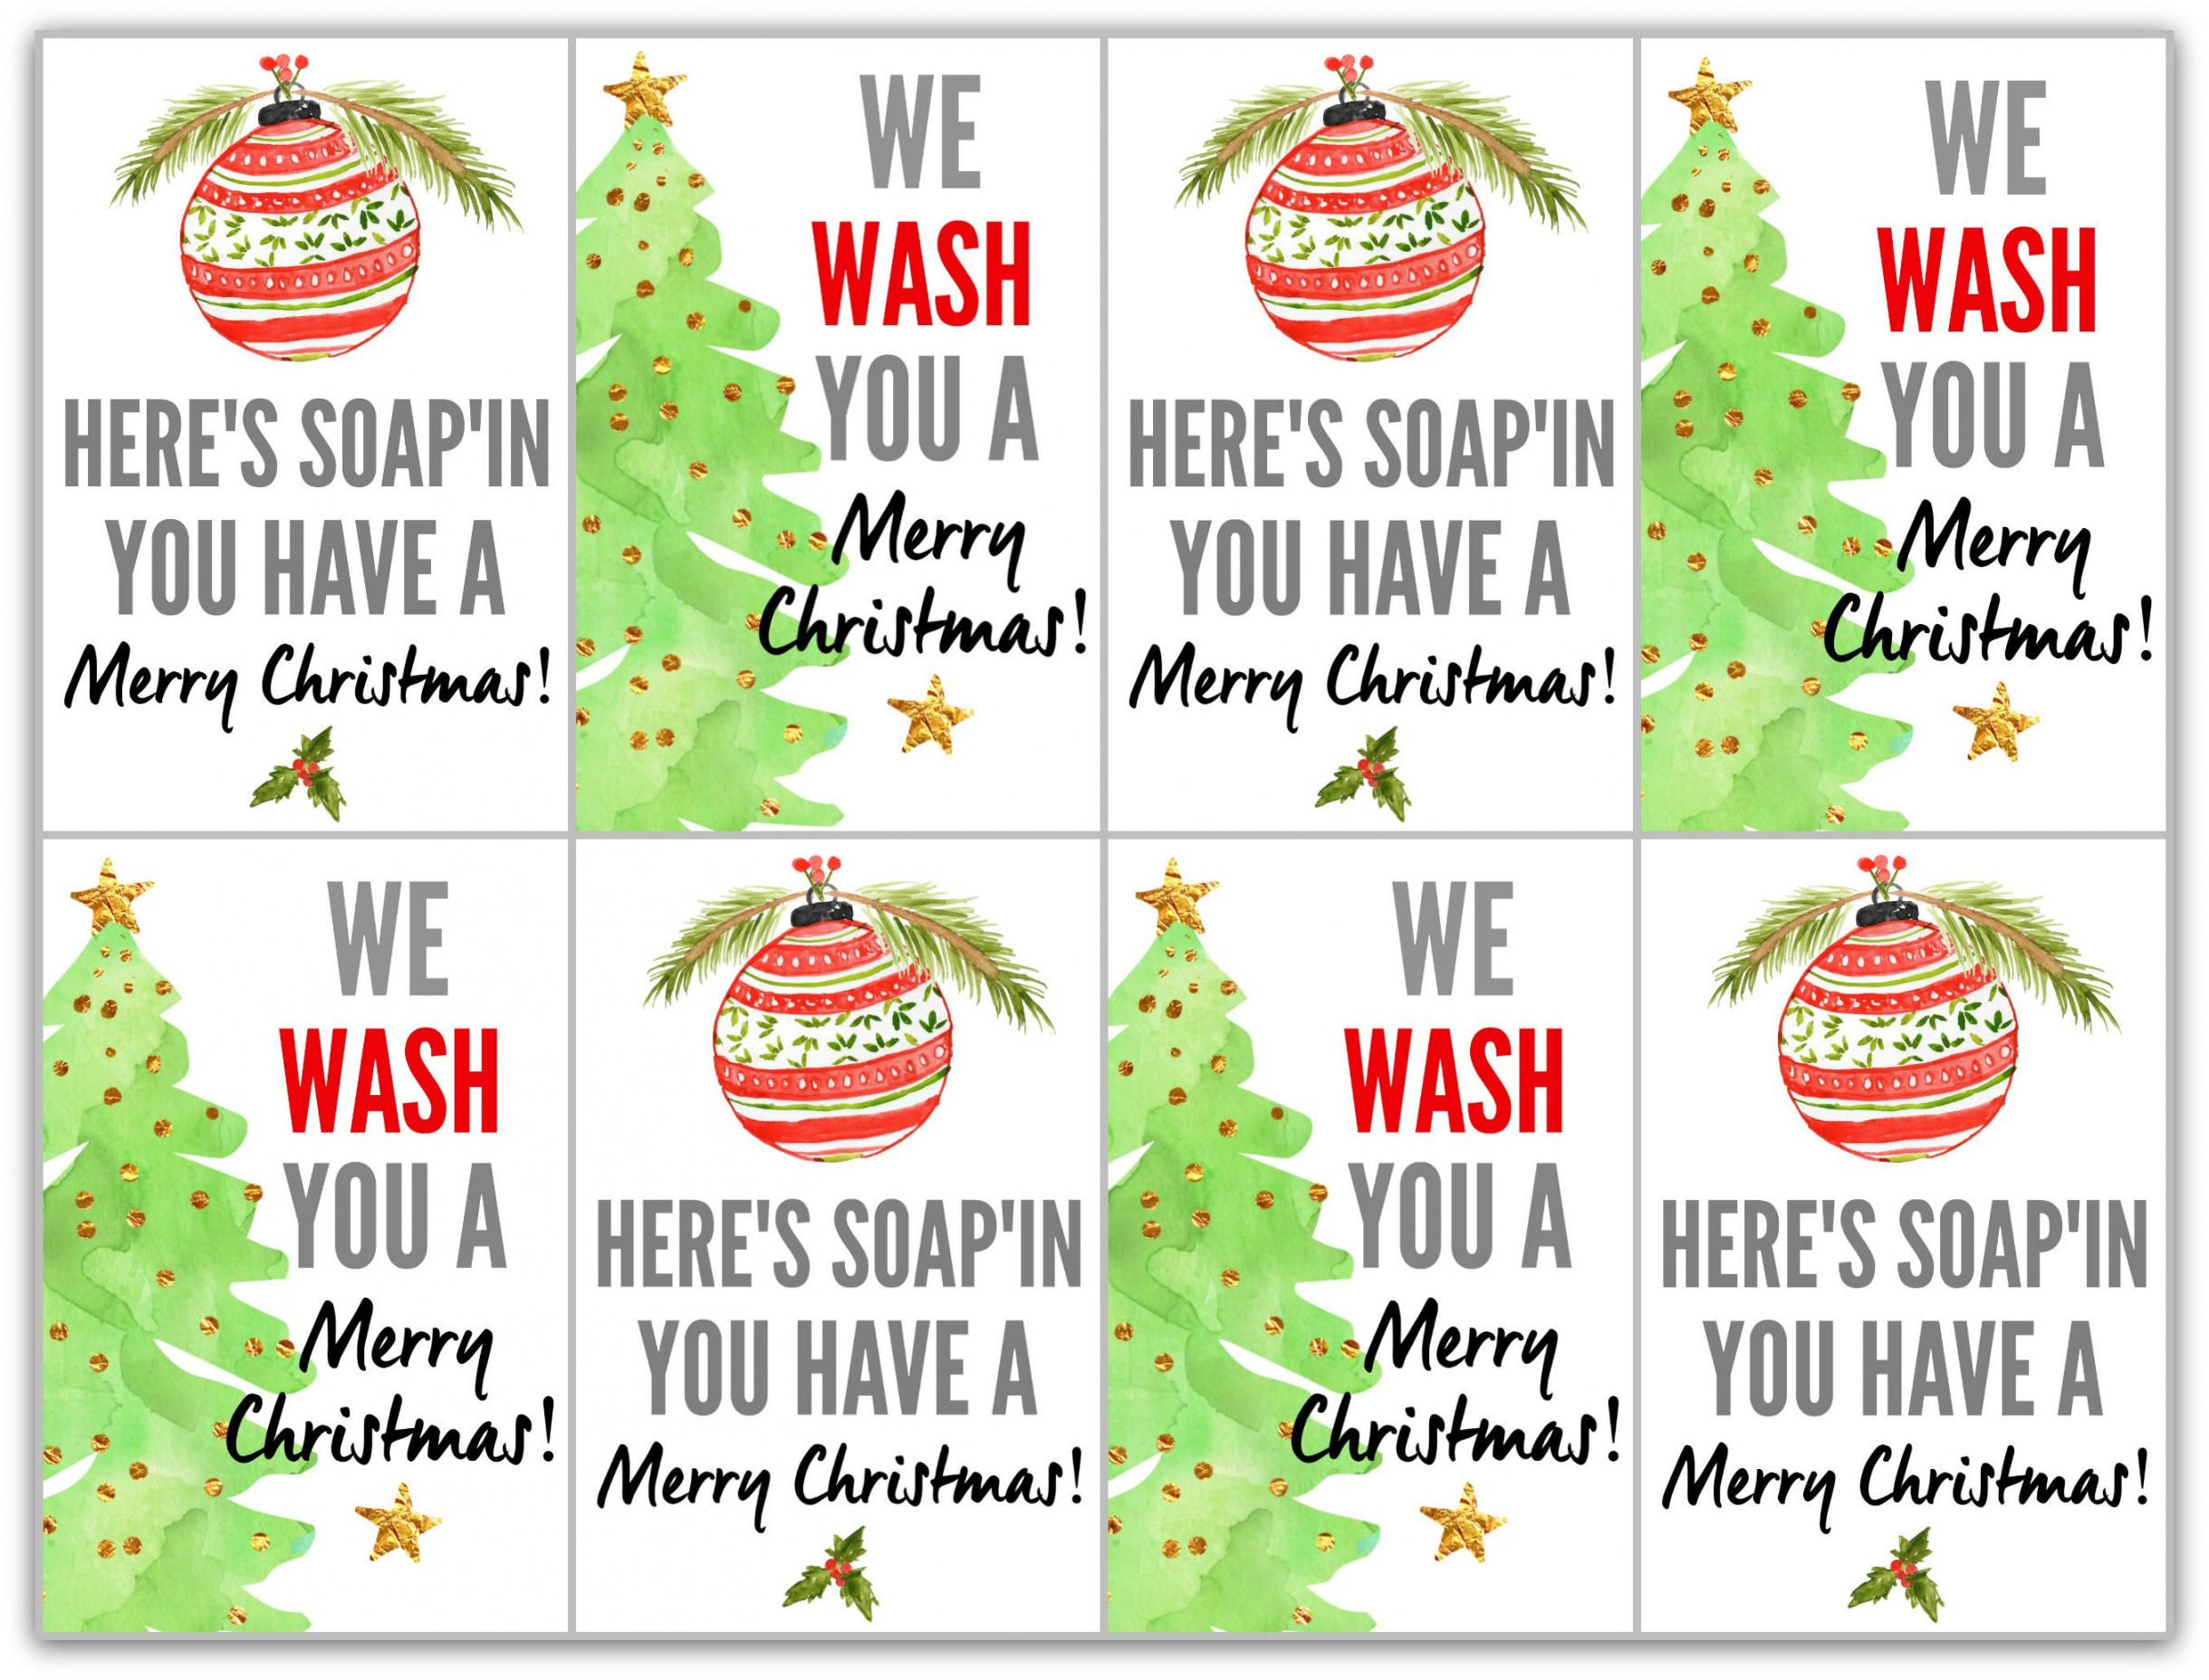 Soap Gifts with Free Printable Tags  Christmas gift tags free  - FREE Printables - Christmas Tags Free Printable